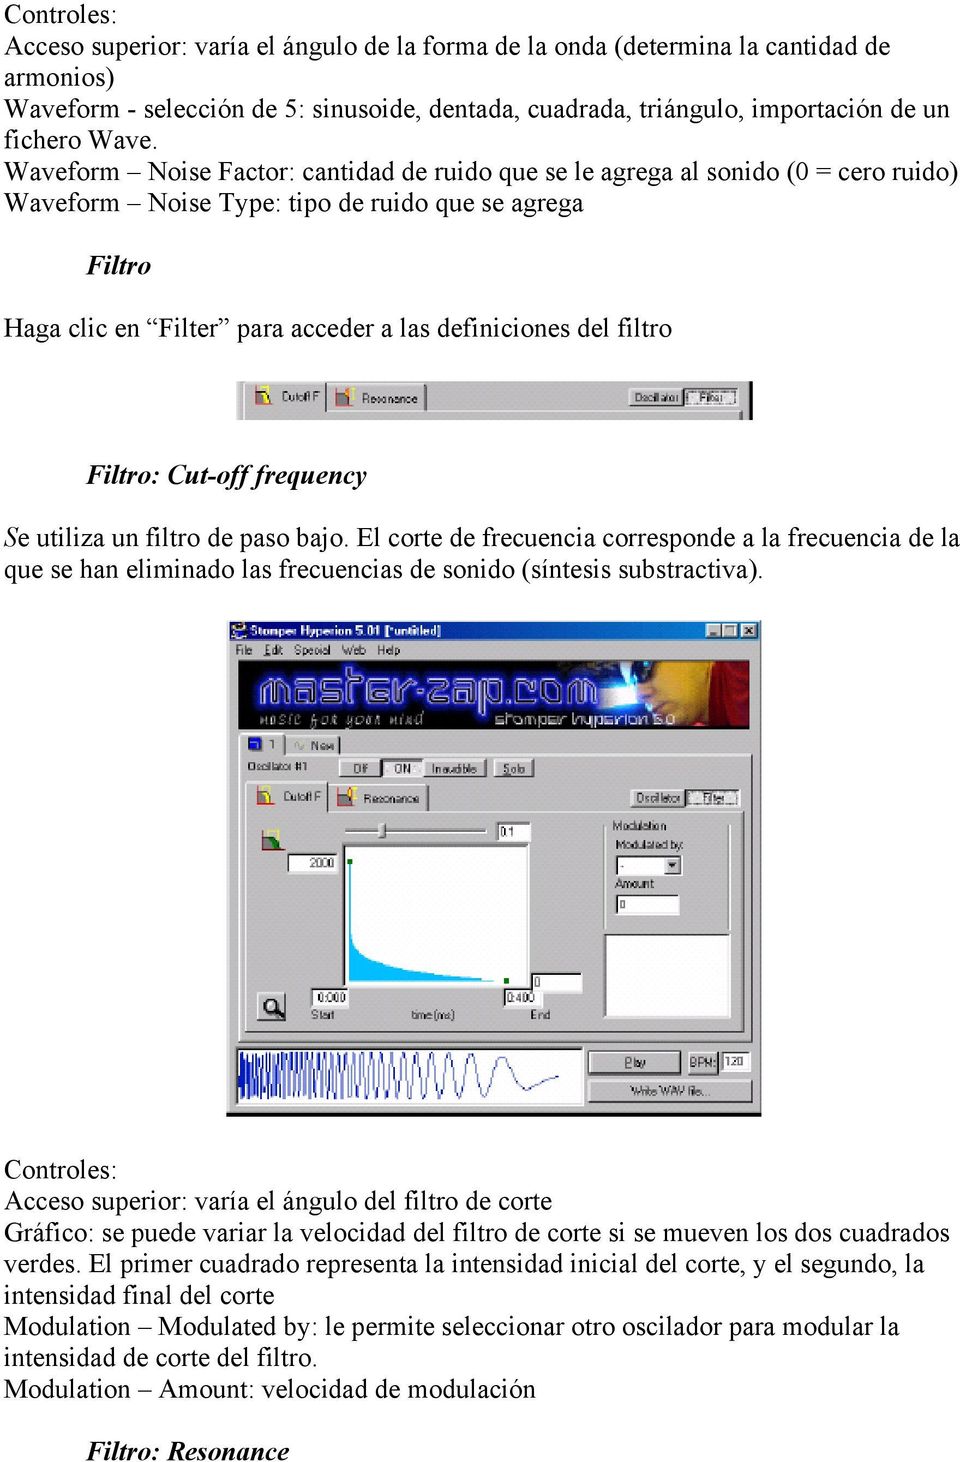 del filtro Filtro: Cut-off frequency Se utiliza un filtro de paso bajo. El corte de frecuencia corresponde a la frecuencia de la que se han eliminado las frecuencias de sonido (síntesis substractiva).